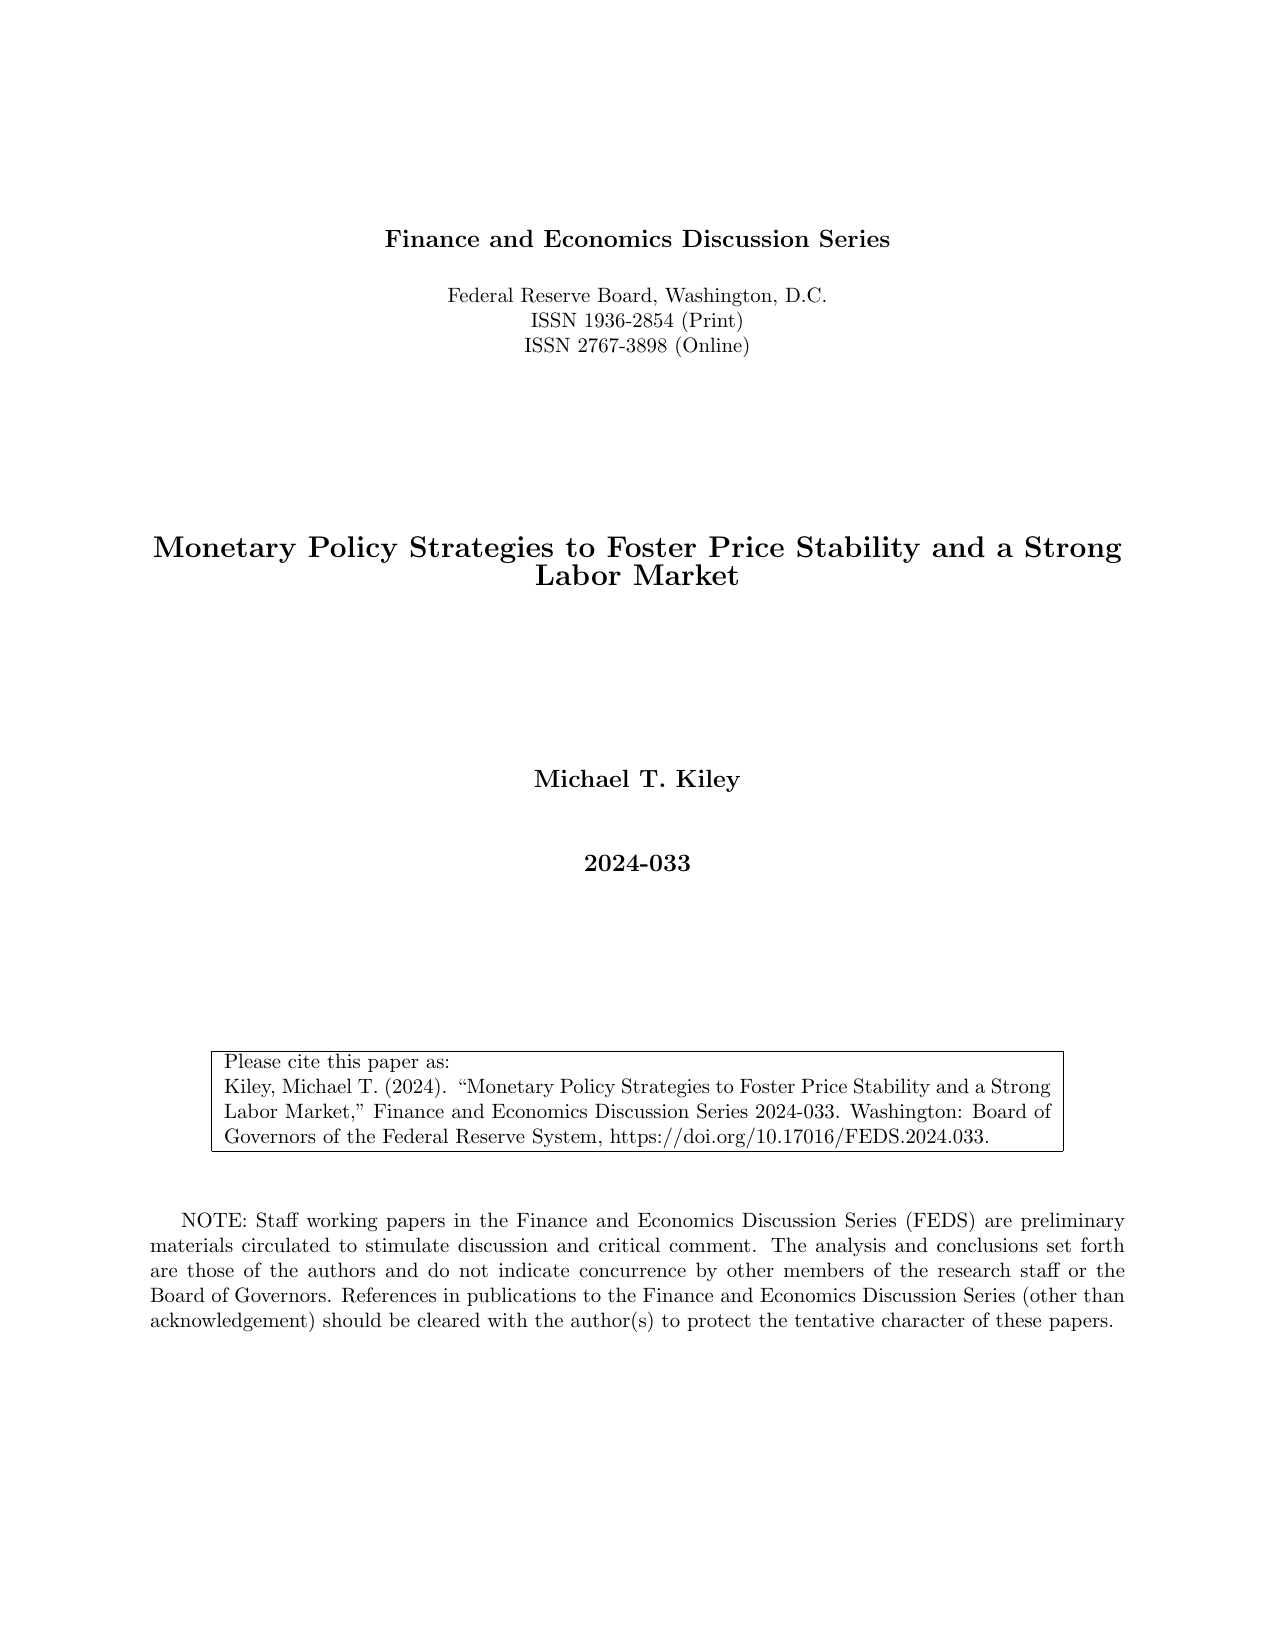 美联储-促进价格稳定和强大劳动力市场的货币政策策略（英）.pdf